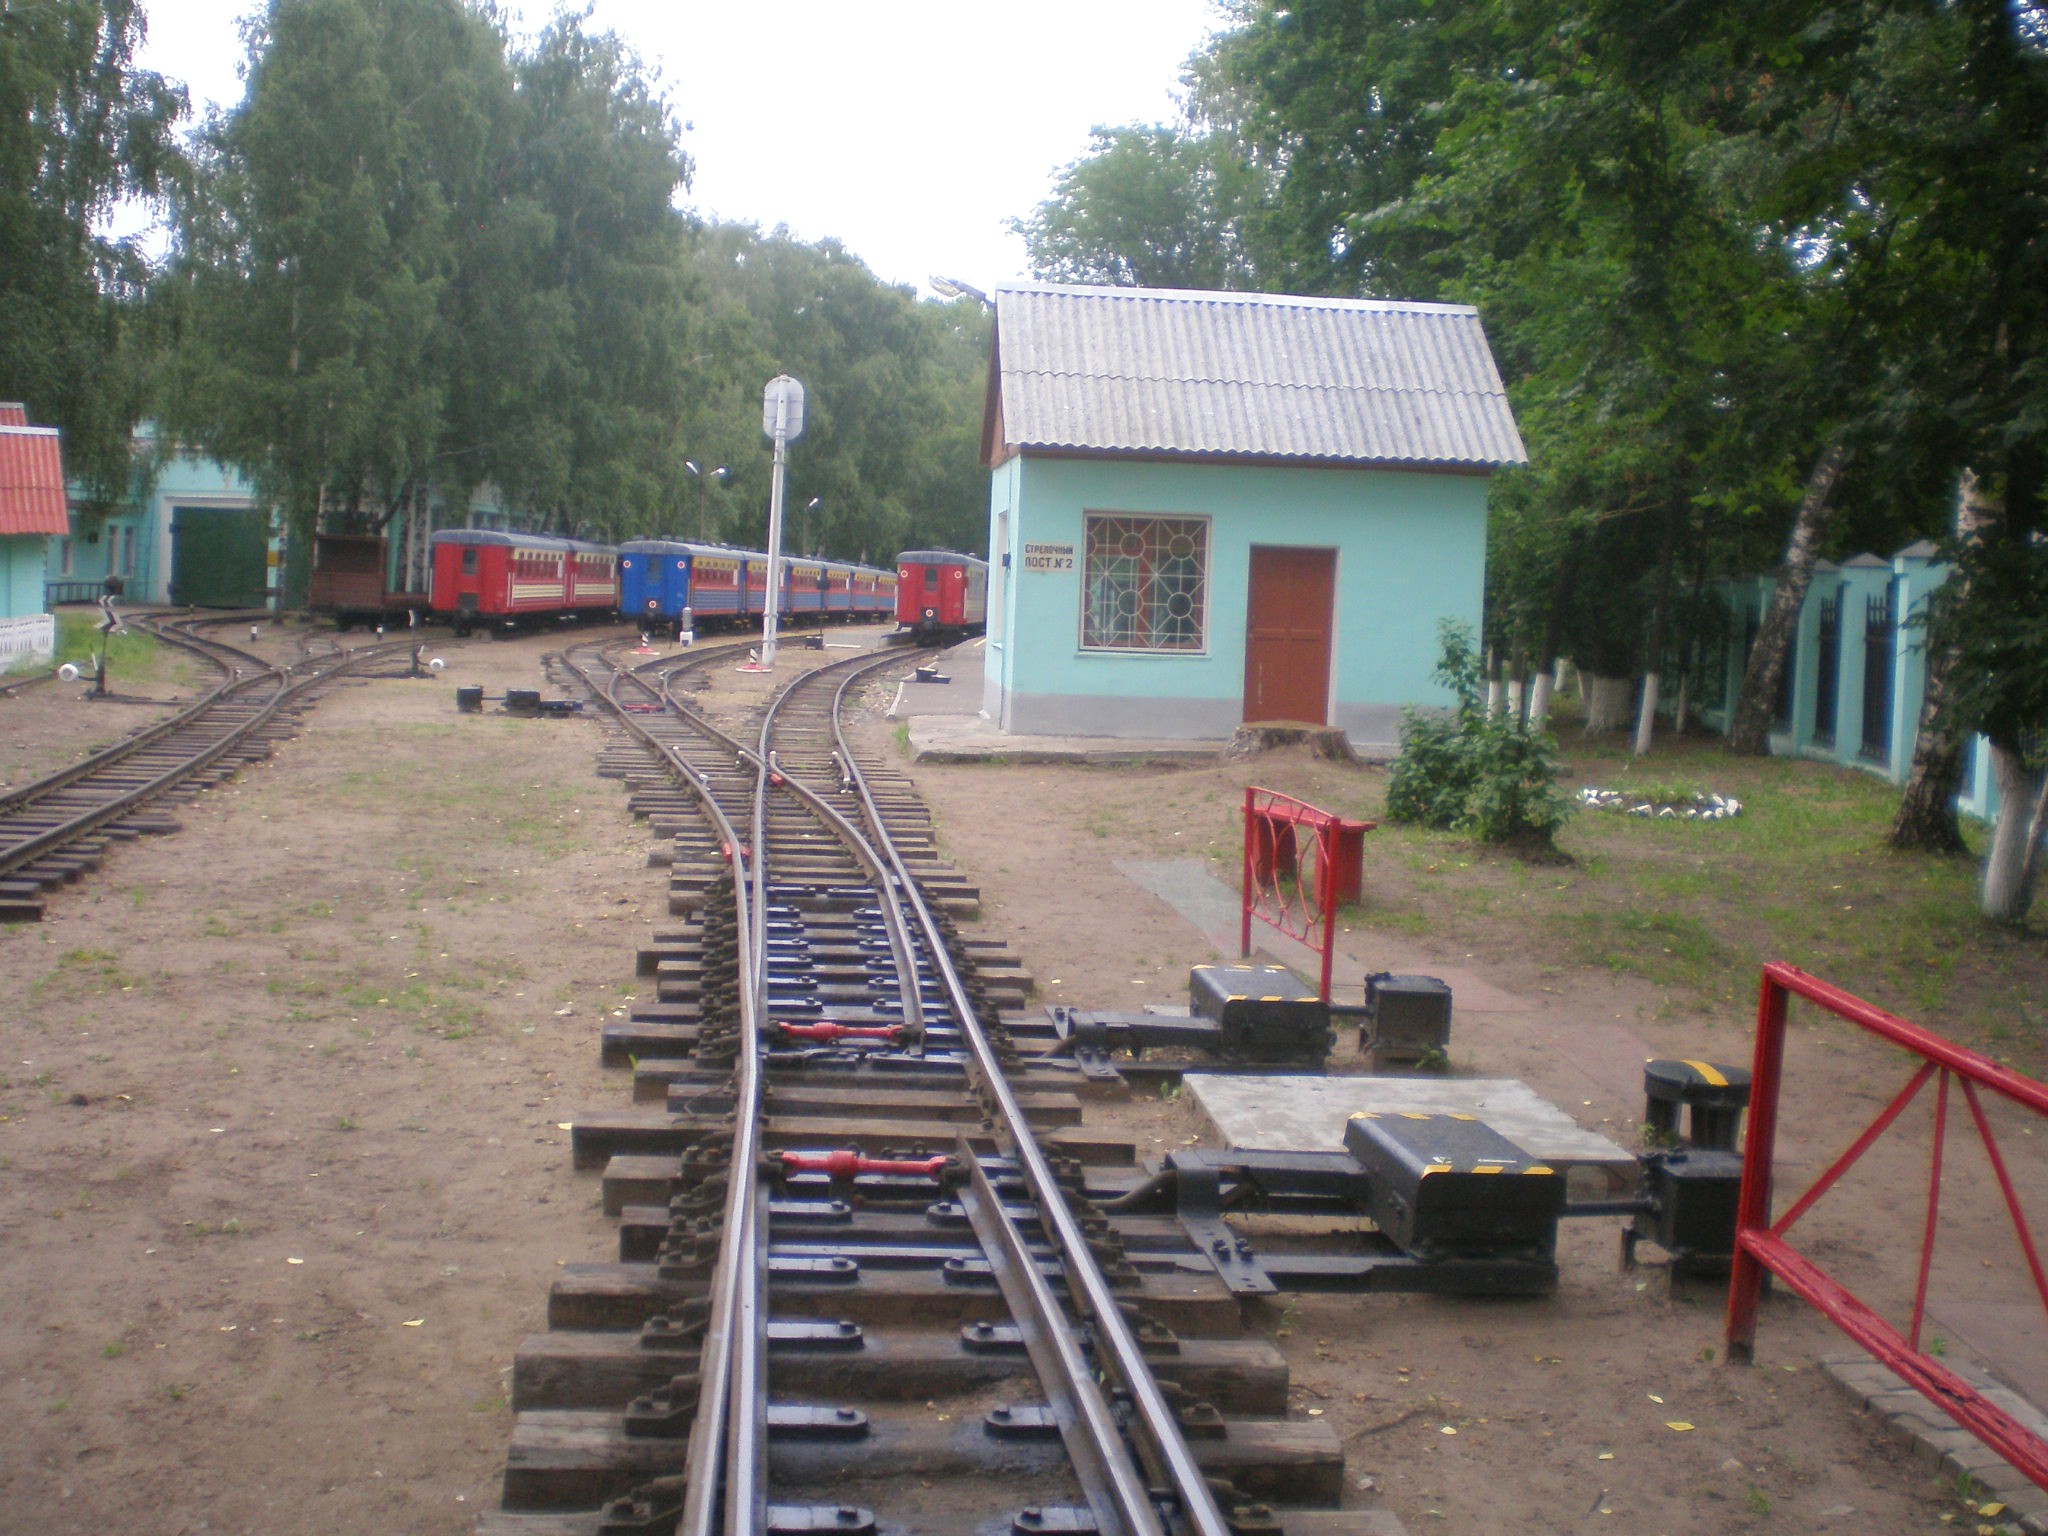 Малая Горьковская (Нижегородская) детская железная дорога — фотографии, сделанные в 2008 году (часть 2)